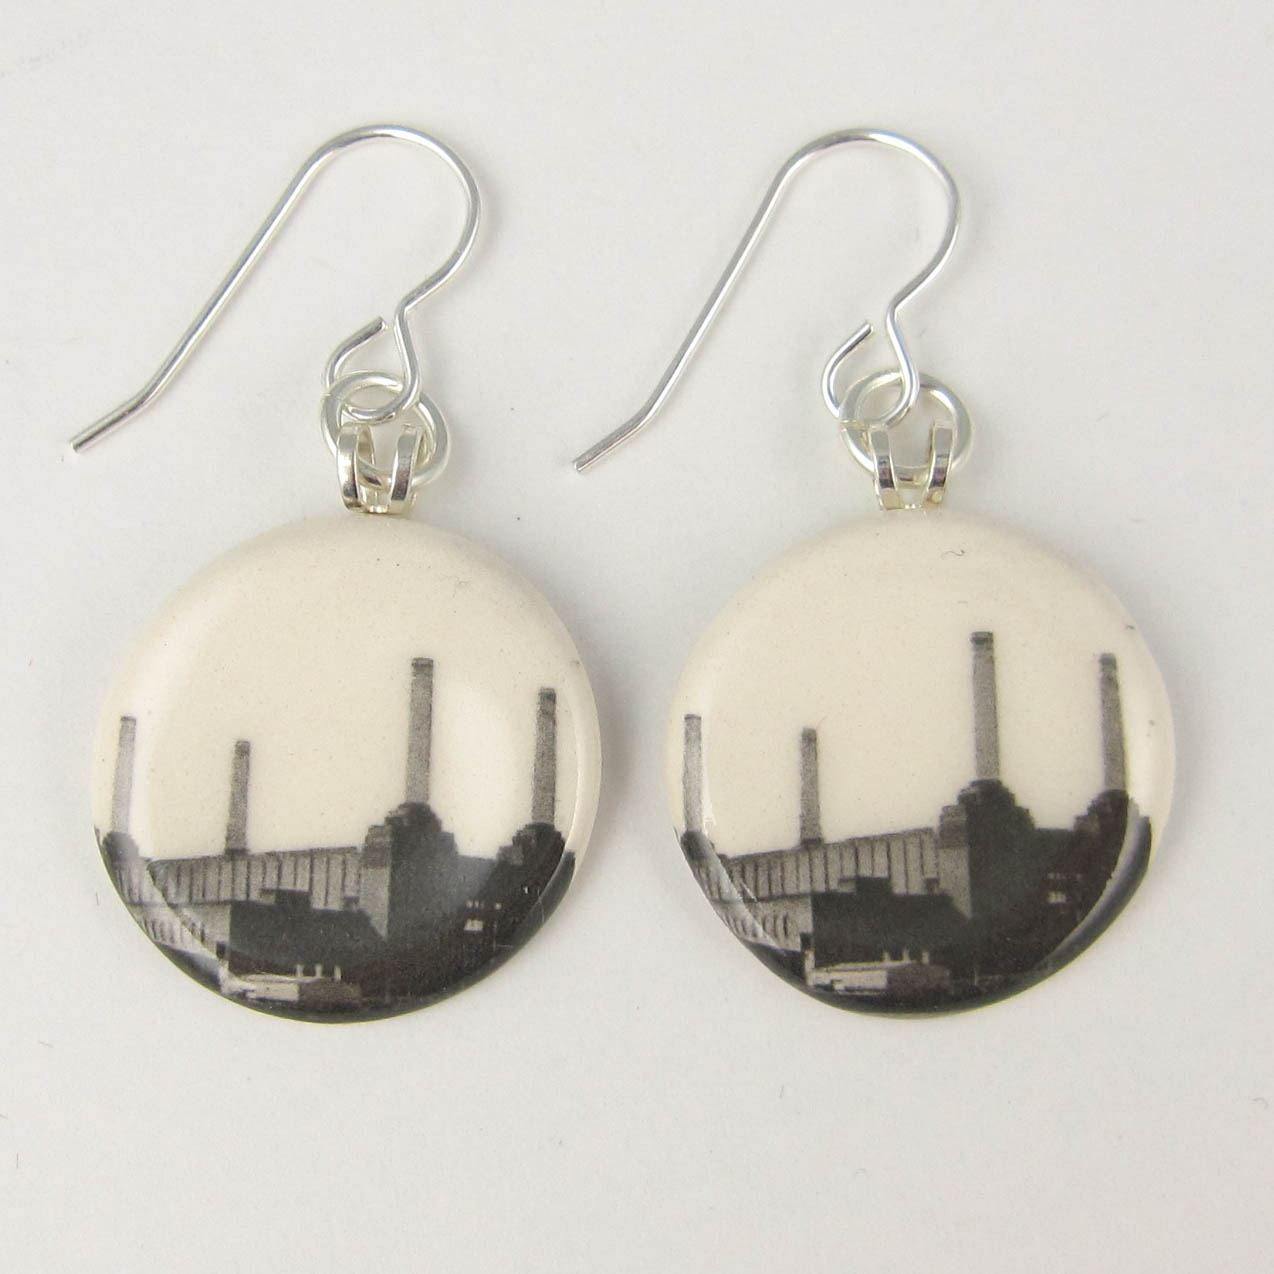 London Battersea Power Station dangly earrings